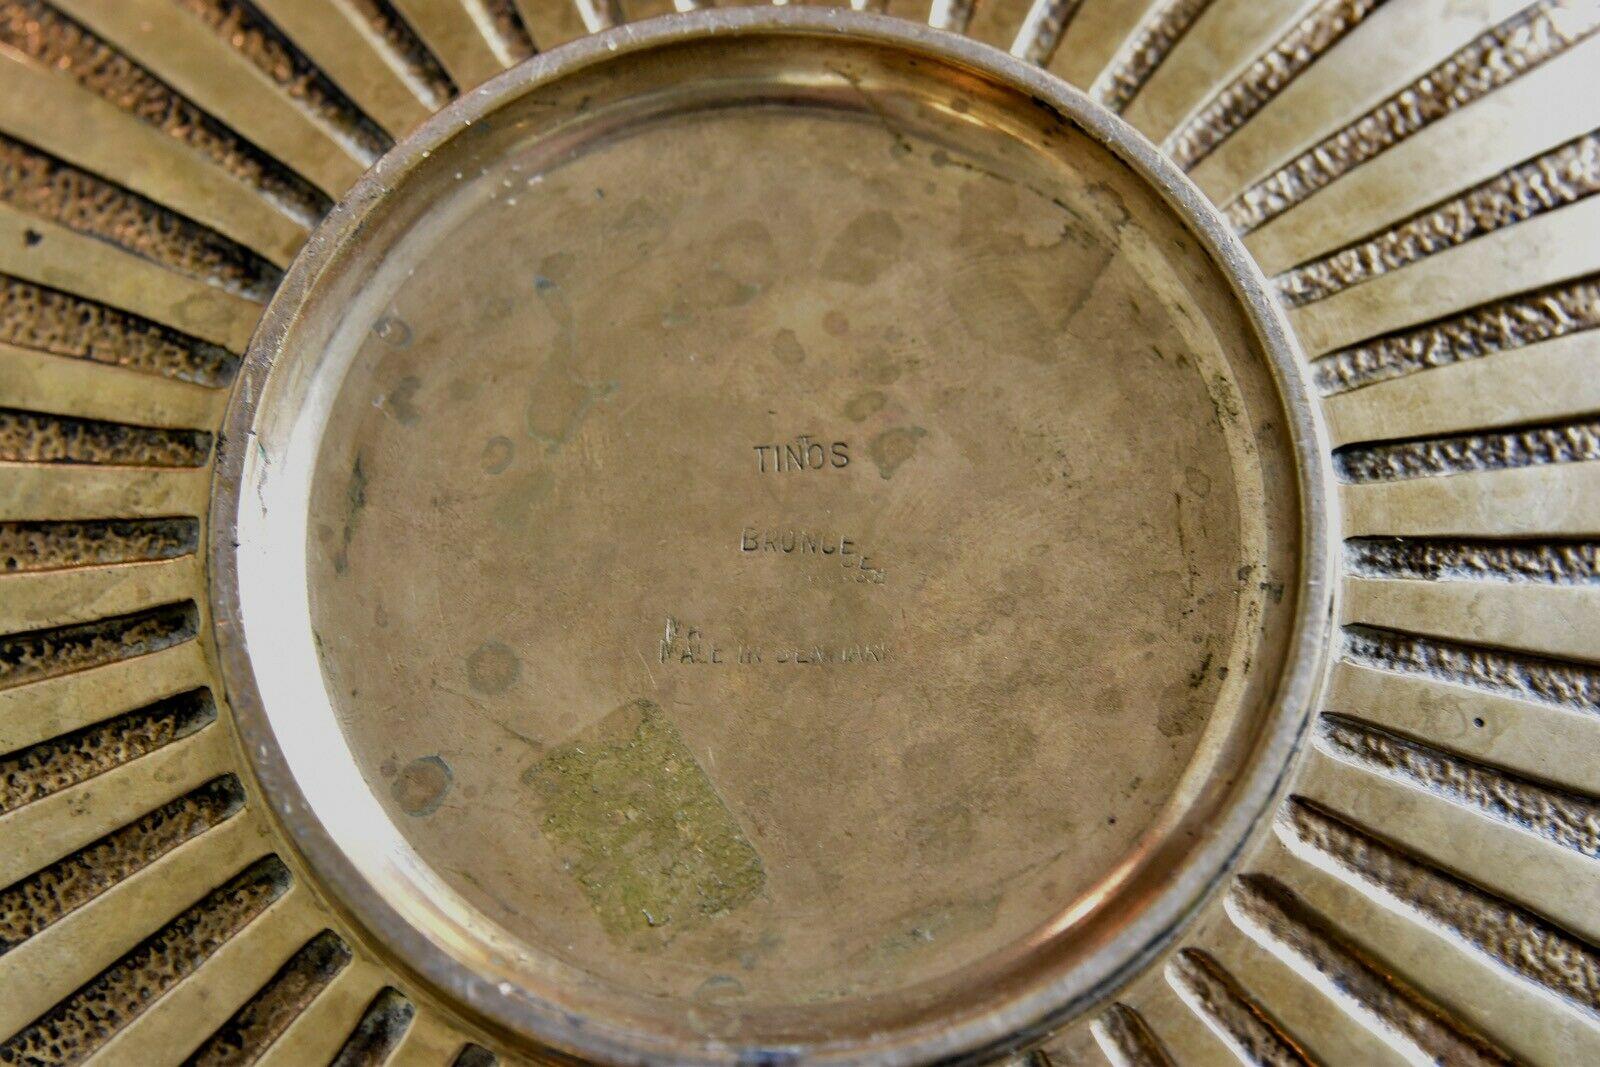 Large Tinos bronze bowl with nice patina.